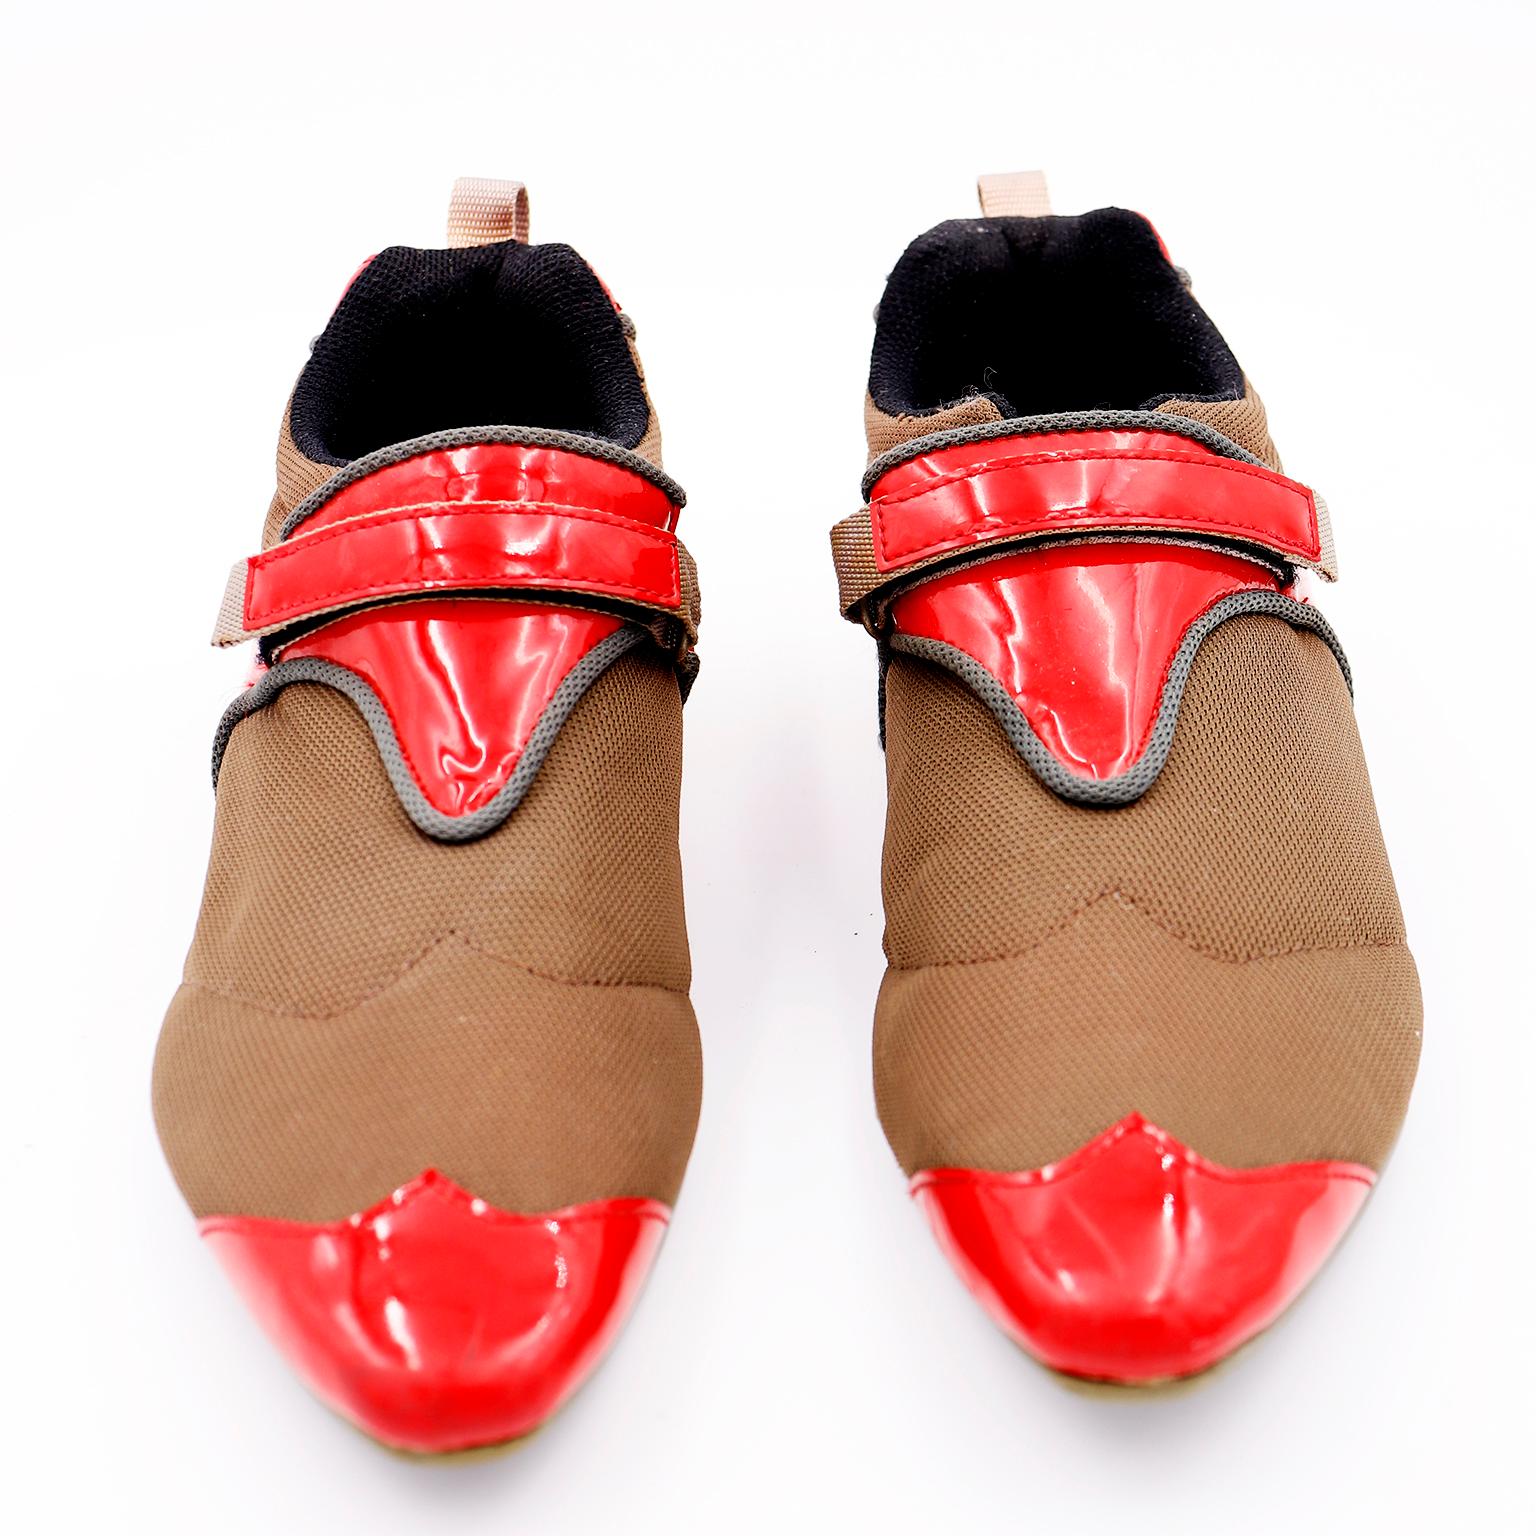 Ces chaussures vintage Issey Miyake Pleats Please sont si uniques et si confortables ! Ces chaussures, qui s'inspirent des chaussures à bouts pointus, sont fabriquées en tissu vert et bordées de cuir verni rouge. Nous les avons acquis auprès d'une